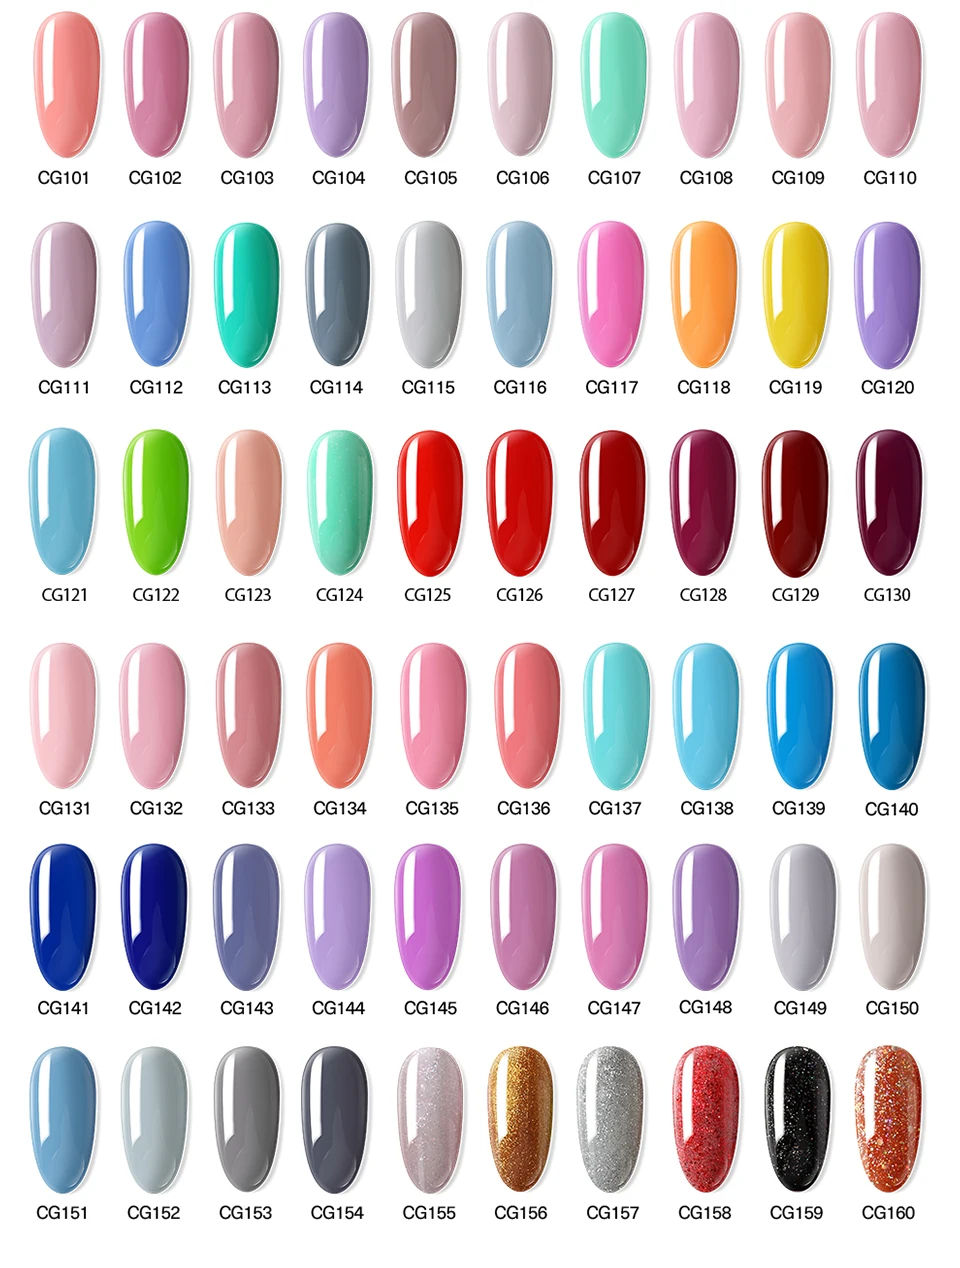 Azure beauty УФ-гель для ногтей 119 цветов Полупостоянный светодиодный гель лак для ногтей замачиваемый Блеск УФ-гель для дизайна ногтей эмаль